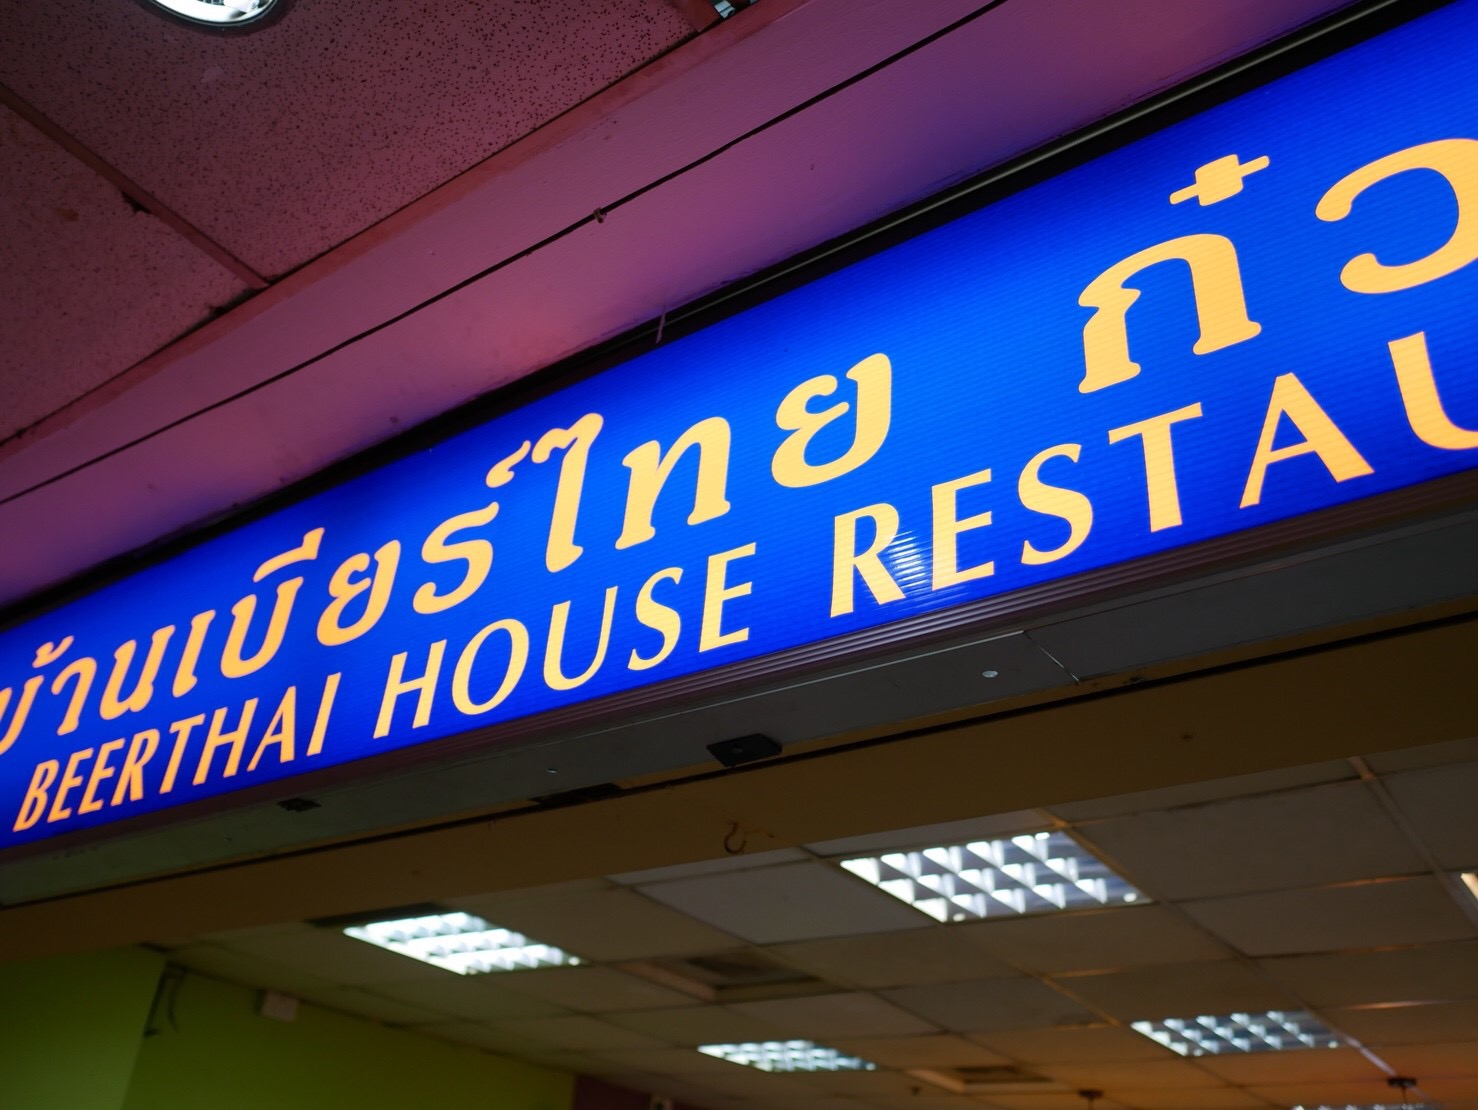 beer thai house restaurant